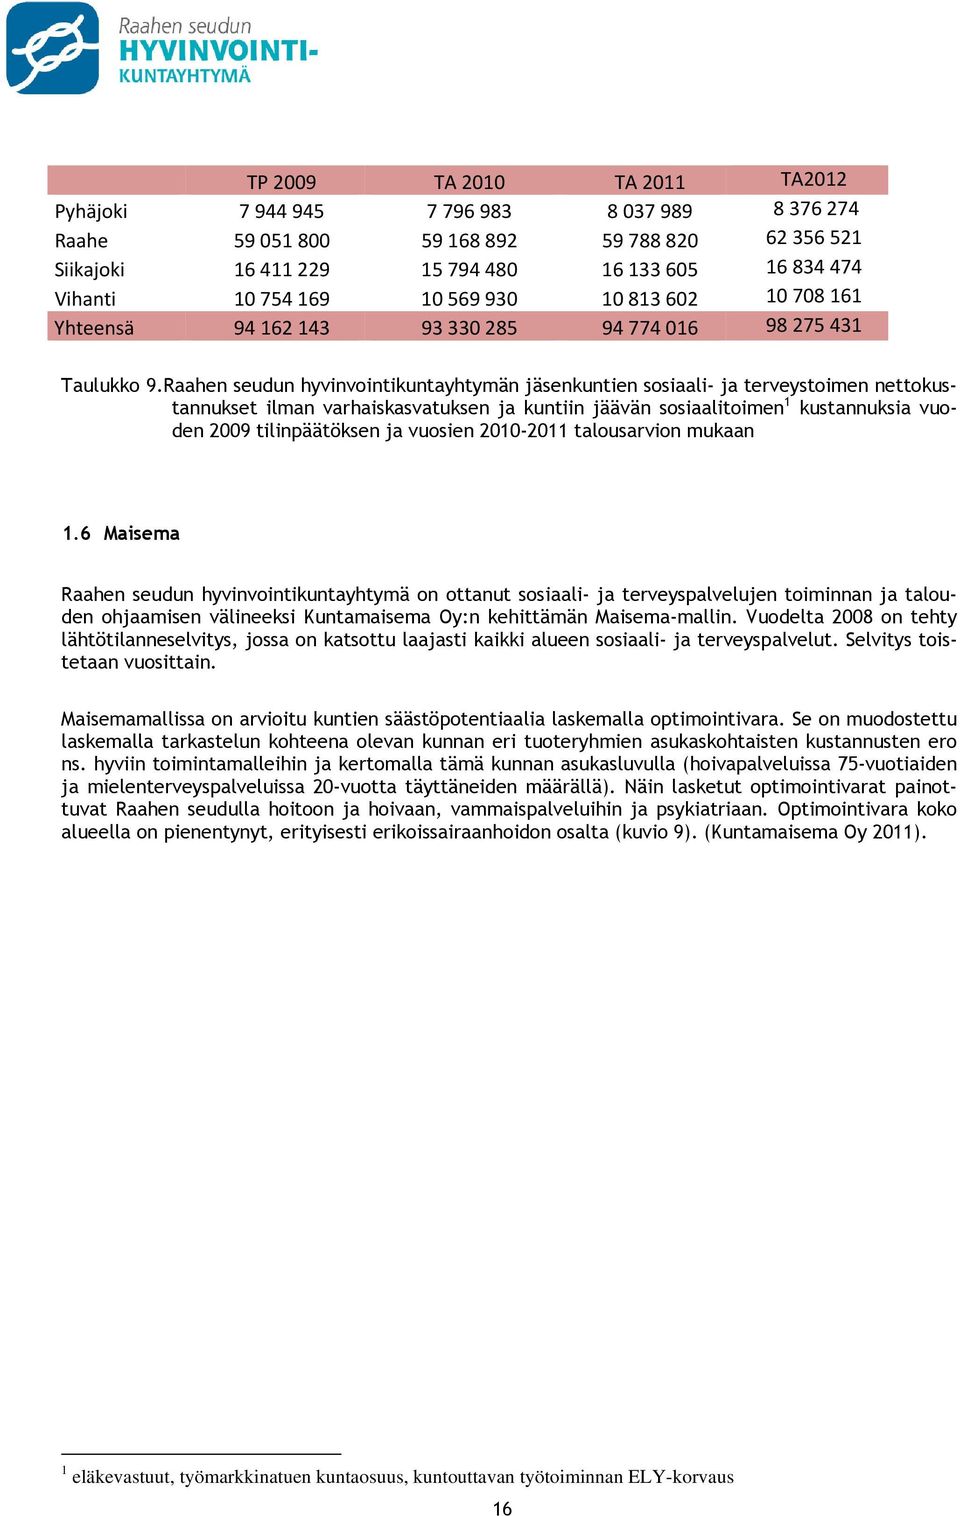 Raahen seudun hyvinvointikuntayhtymän jäsenkuntien sosiaali- ja terveystoimen nettokustannukset ilman varhaiskasvatuksen ja kuntiin jäävän sosiaalitoimen 1 kustannuksia vuoden 2009 tilinpäätöksen ja